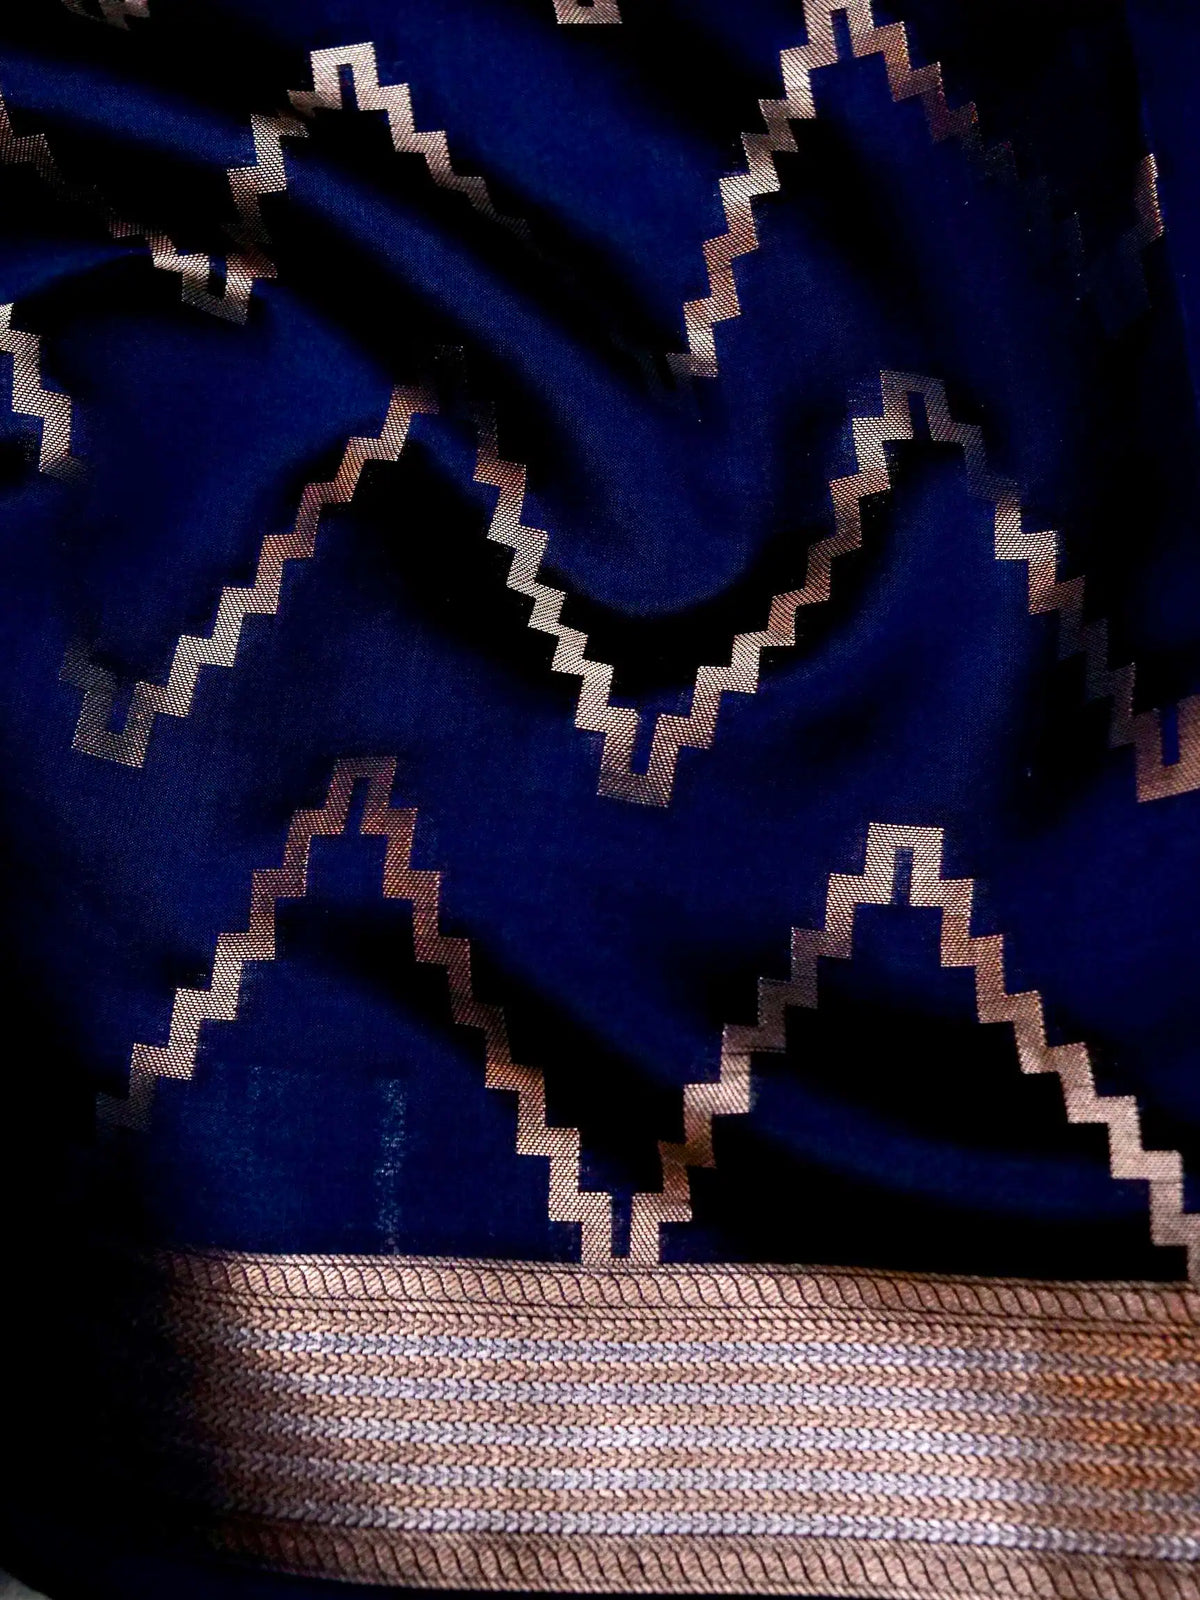 Handwoven Deep Blue Banarasi Katan Soft Silk Saree